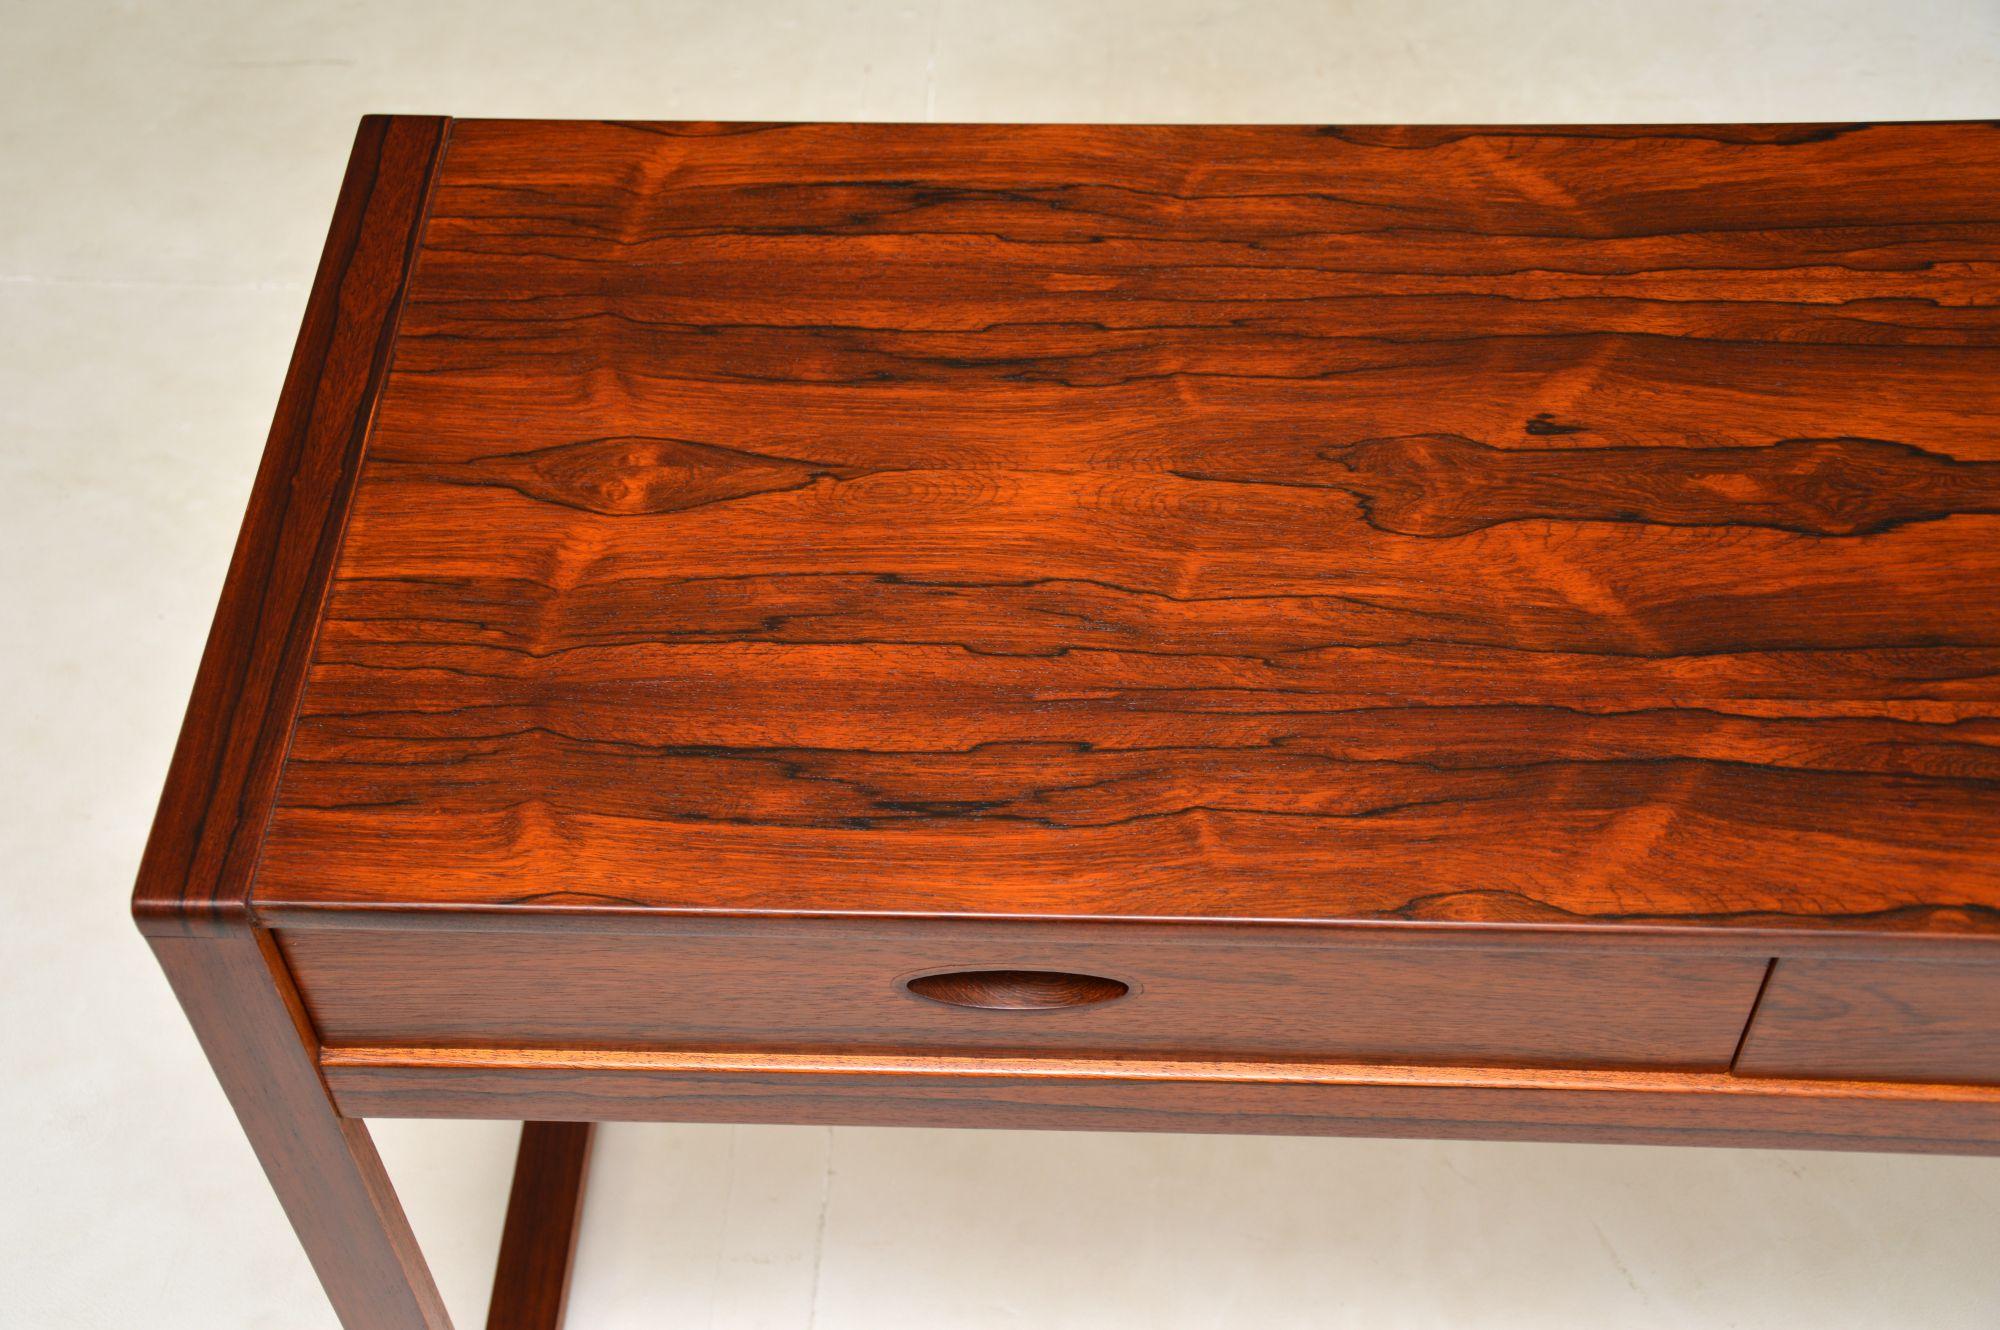 Wood 1960s Vintage Desk / Console Table by Uniflex